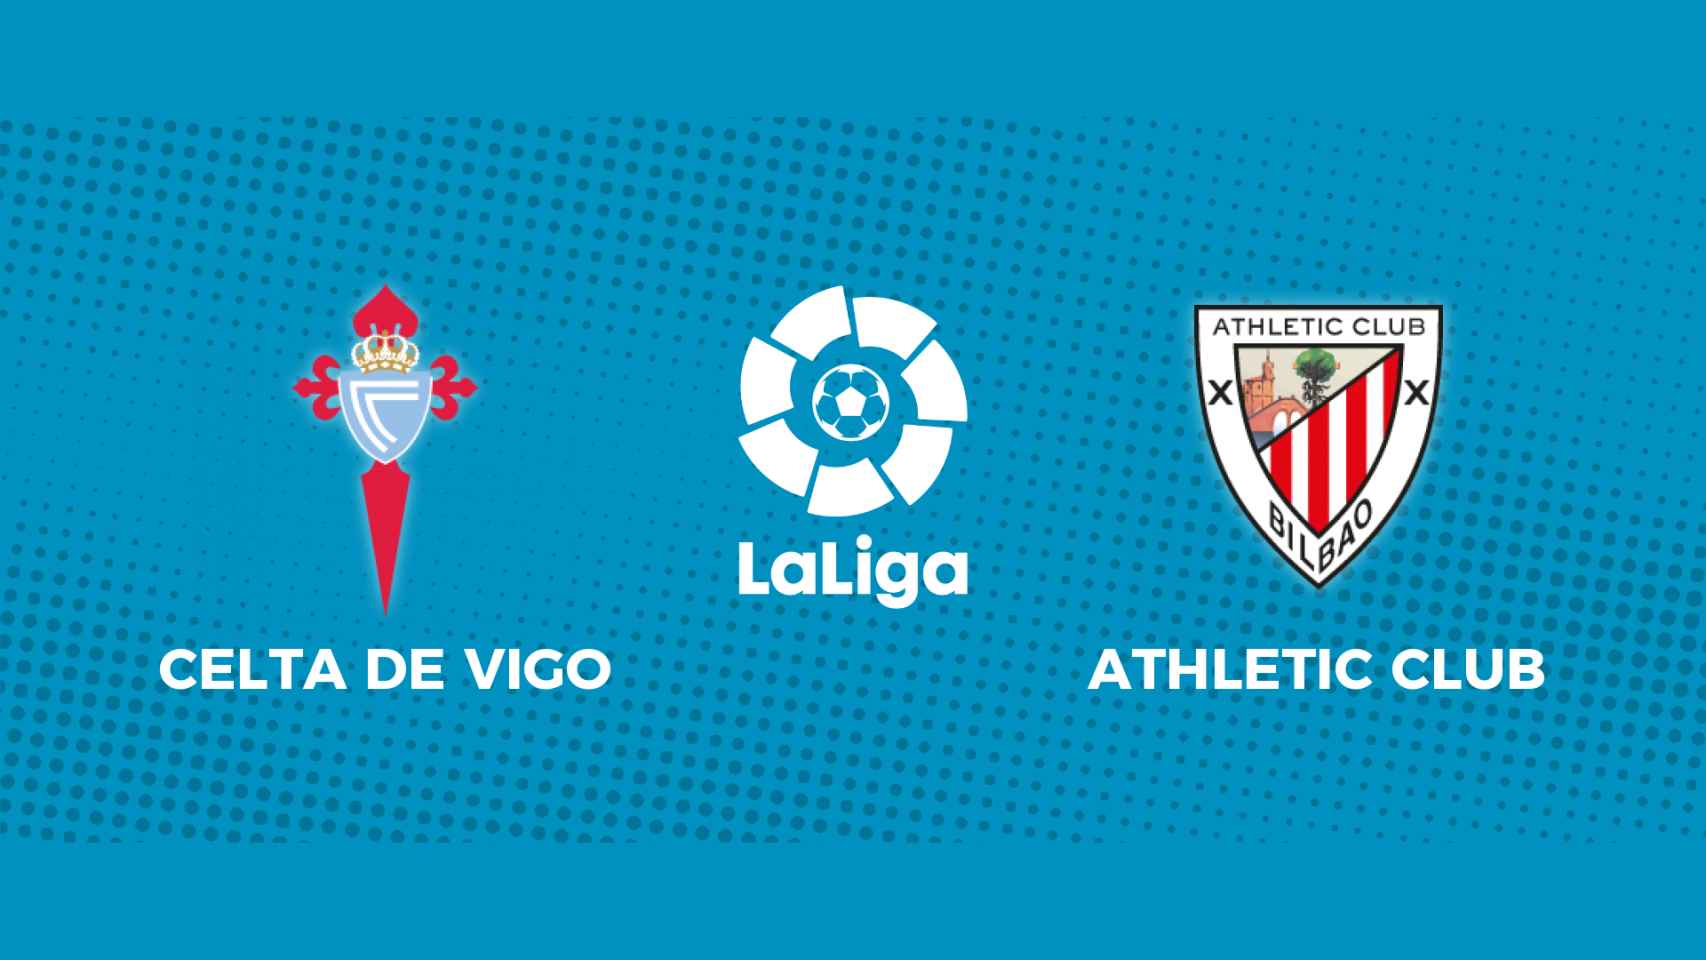 Celta de Vigo - Athletic Club, partido de La Liga